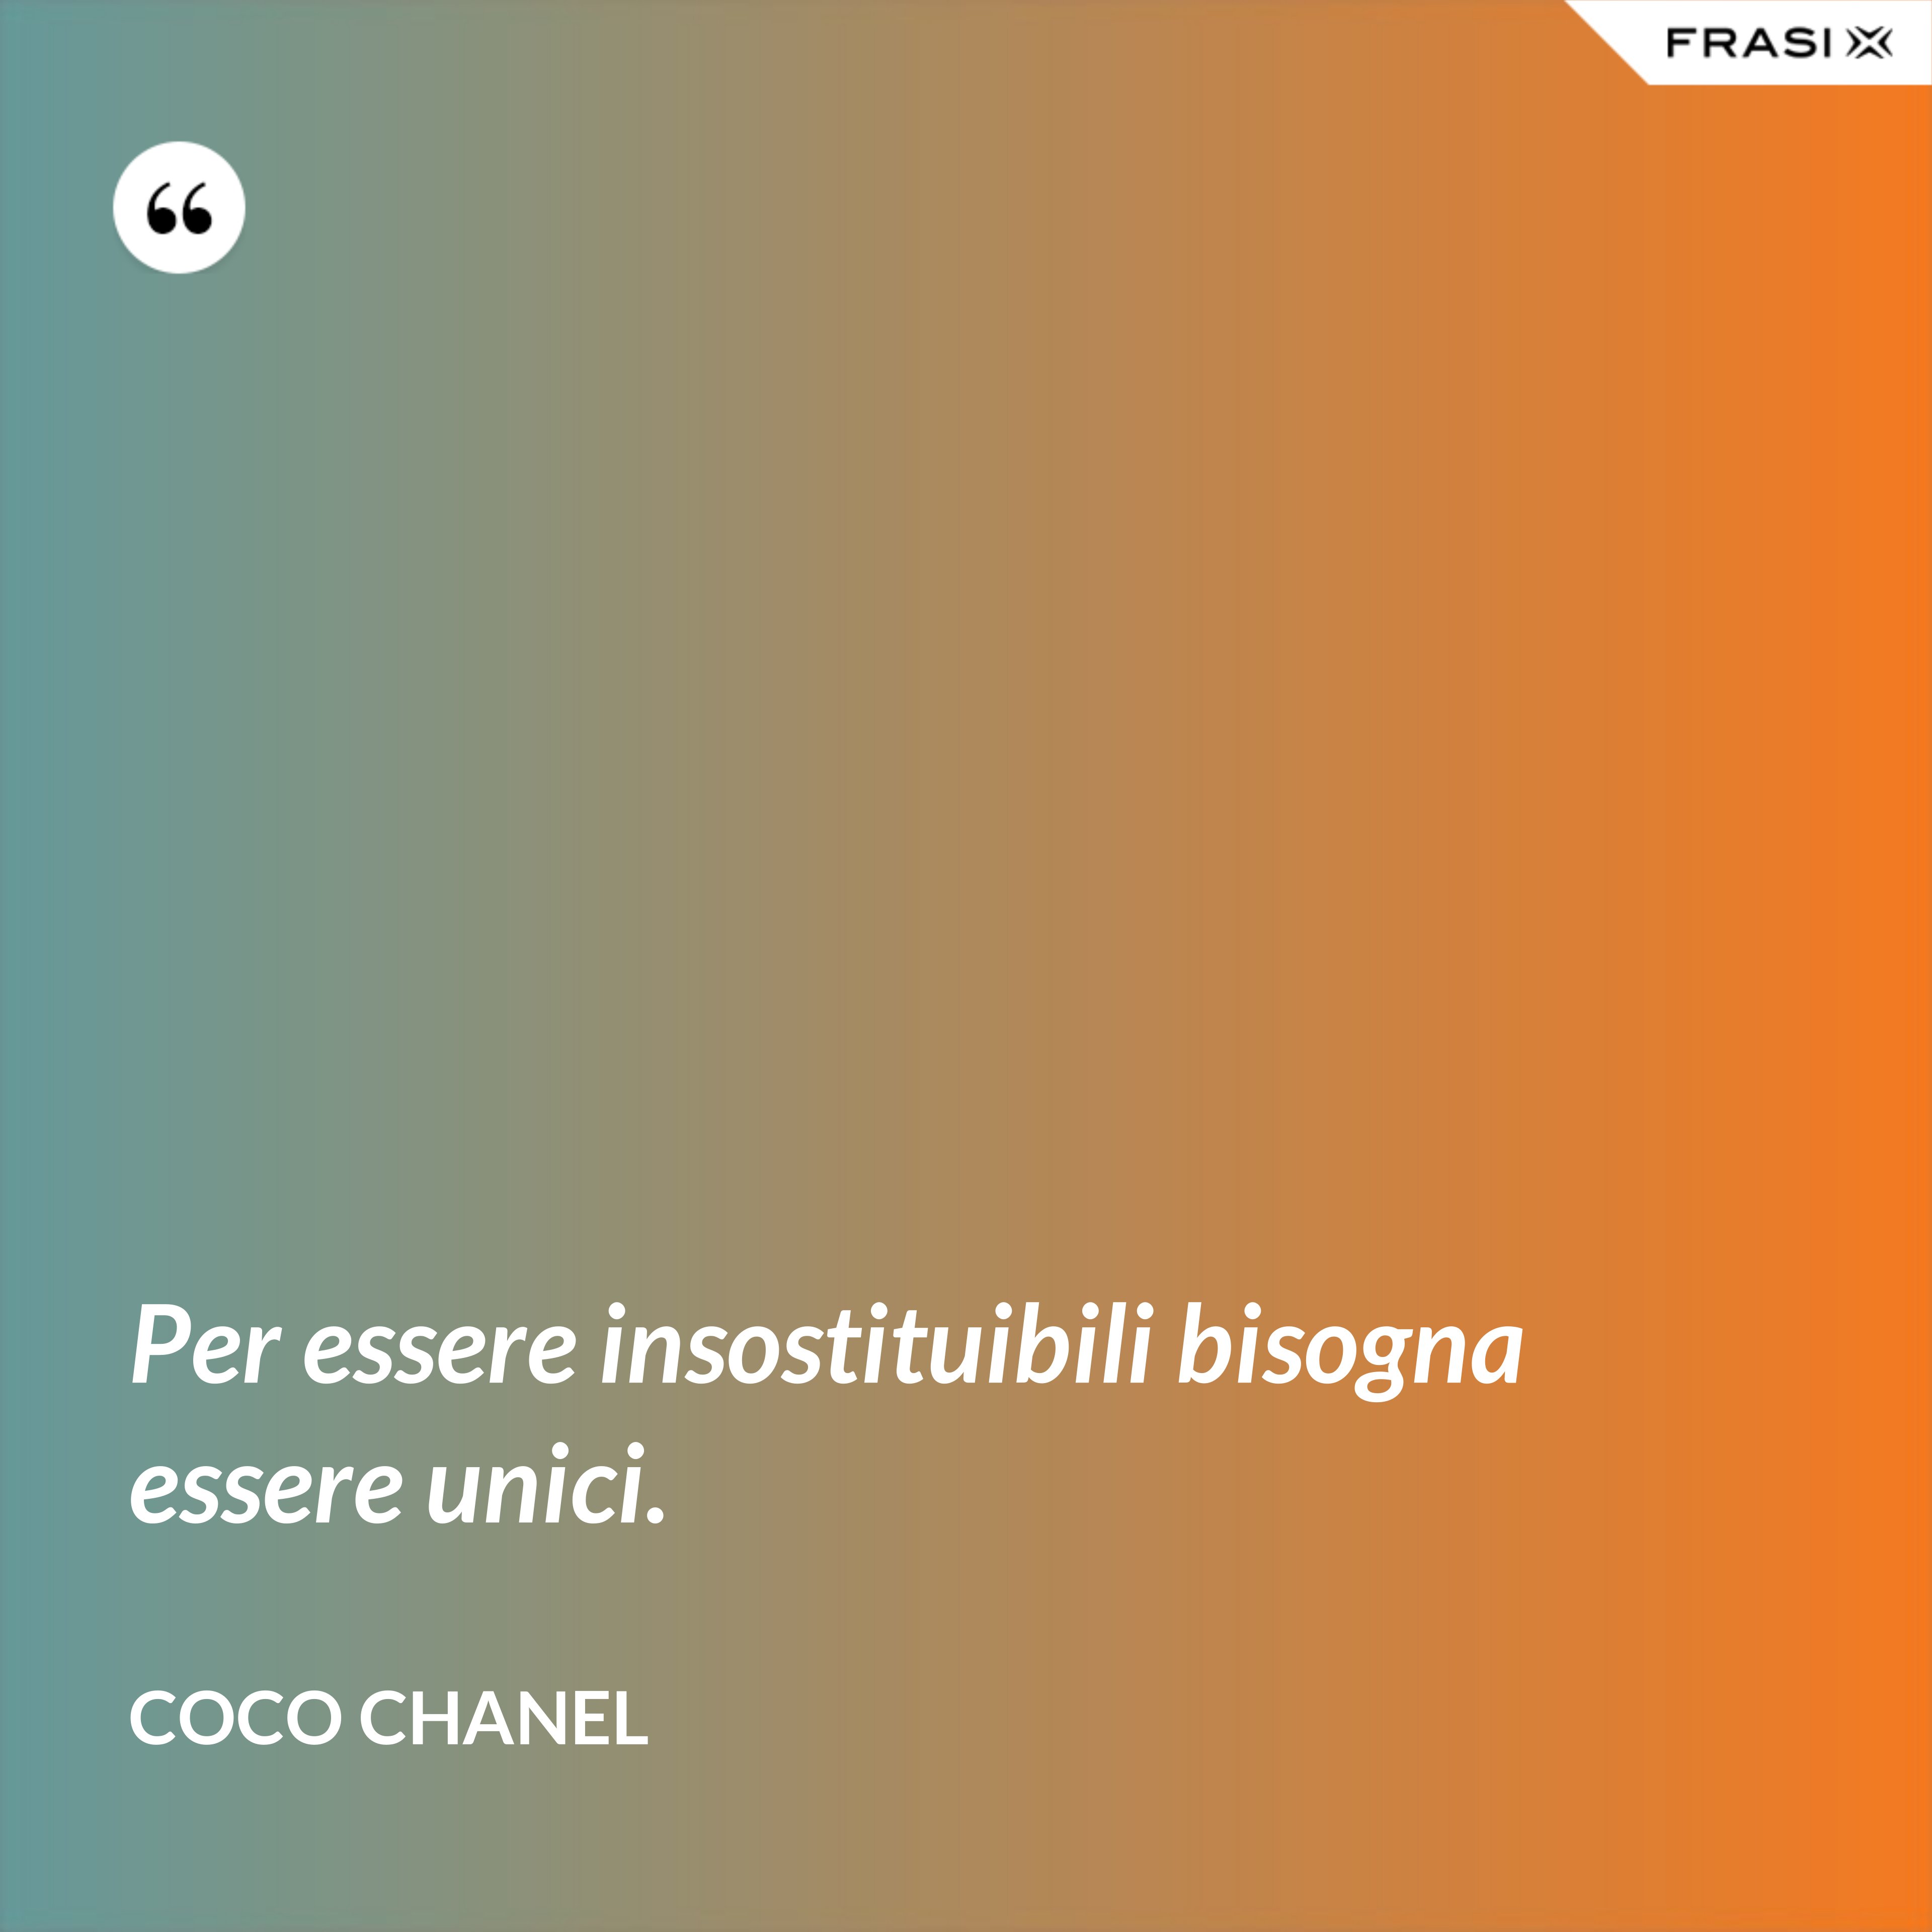 Per essere insostituibili bisogna essere unici. - Coco Chanel